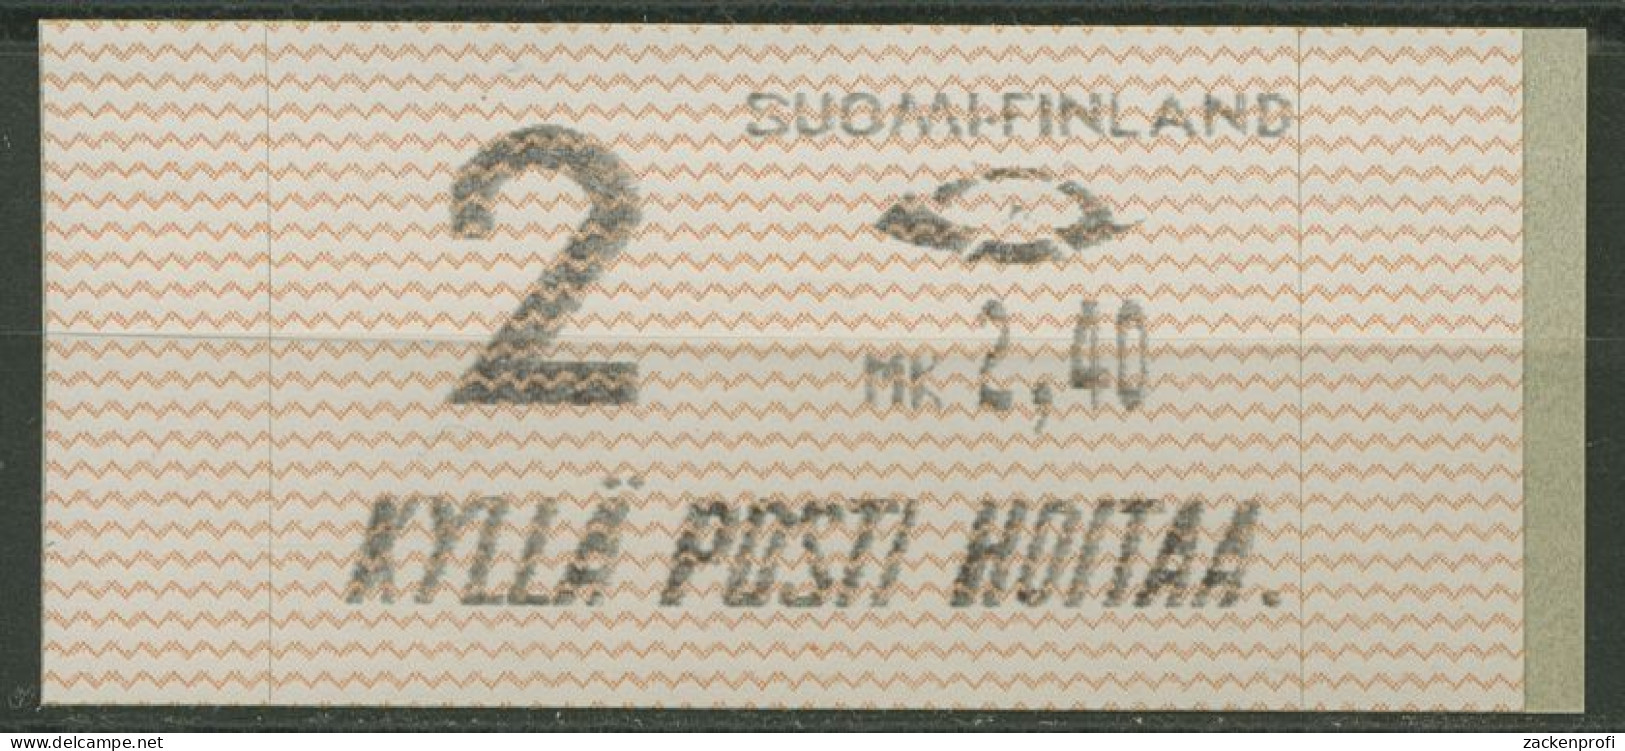 Finnland Automatenmarken 1991 MK 2,40 Einzelwert, ATM 10.1 Z2 Postfrisch - Timbres De Distributeurs [ATM]